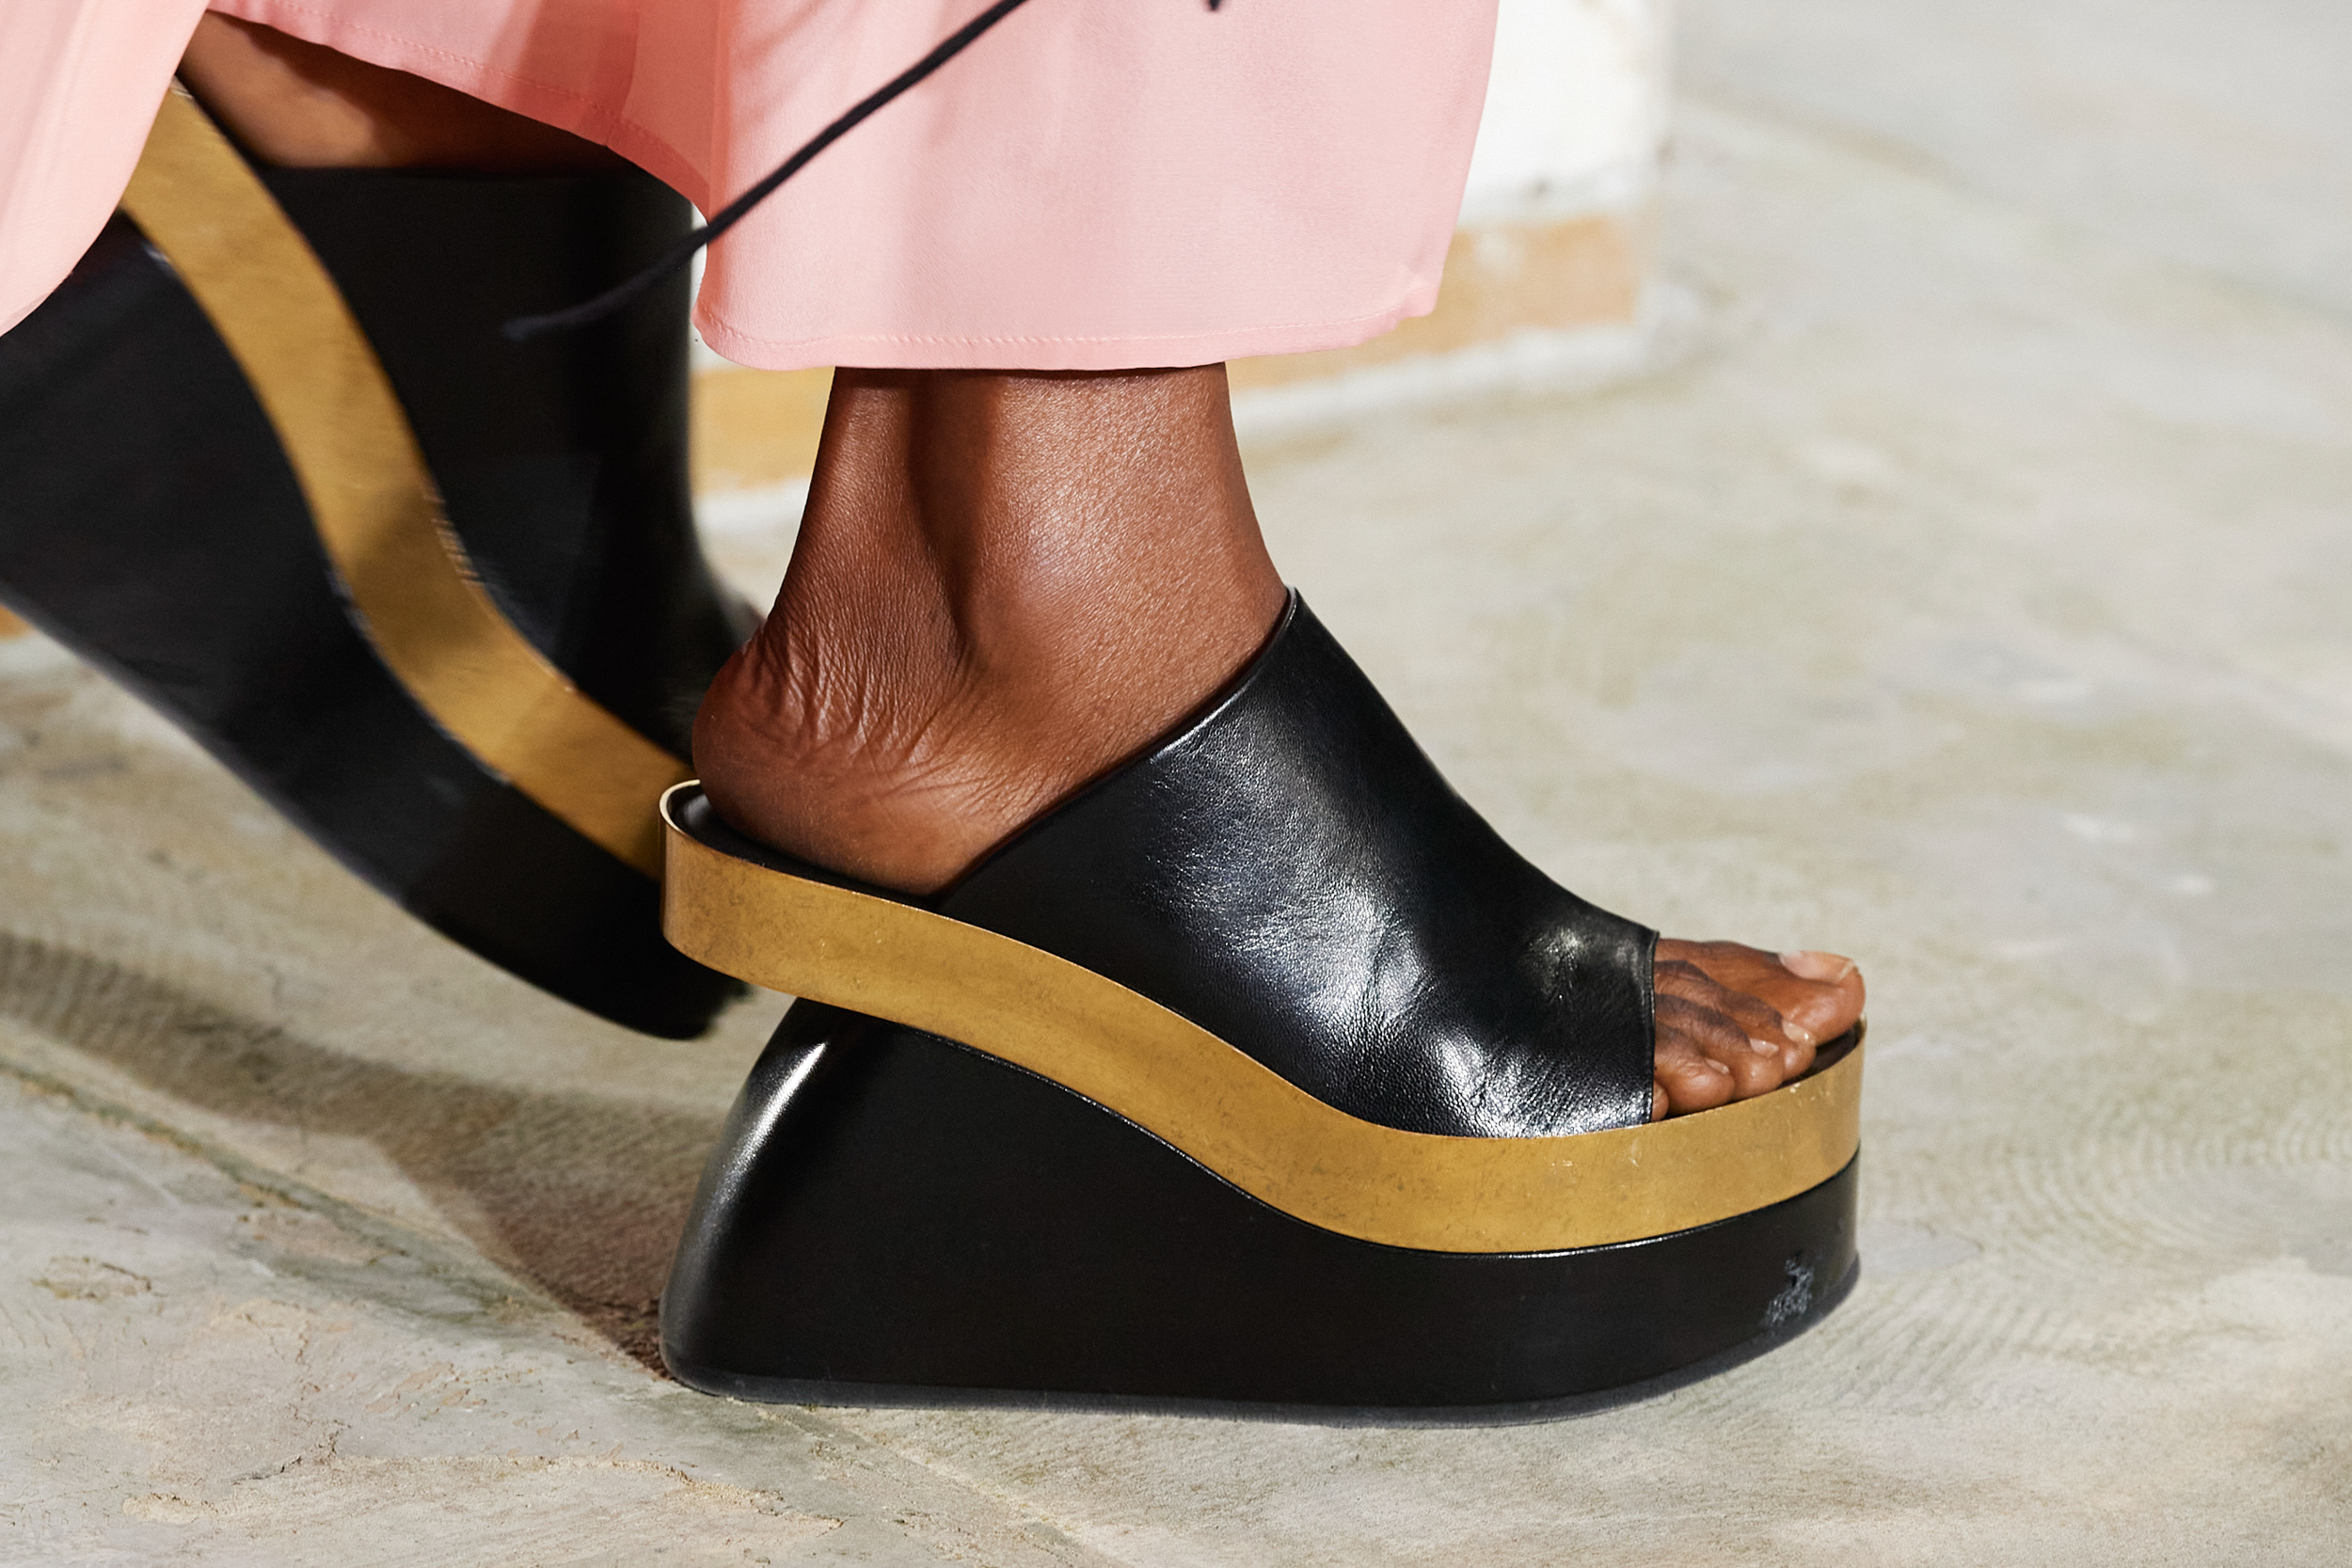 Flatform, Platform & Wedge Shoes Spring 2023 Fashion Trend | The Impression